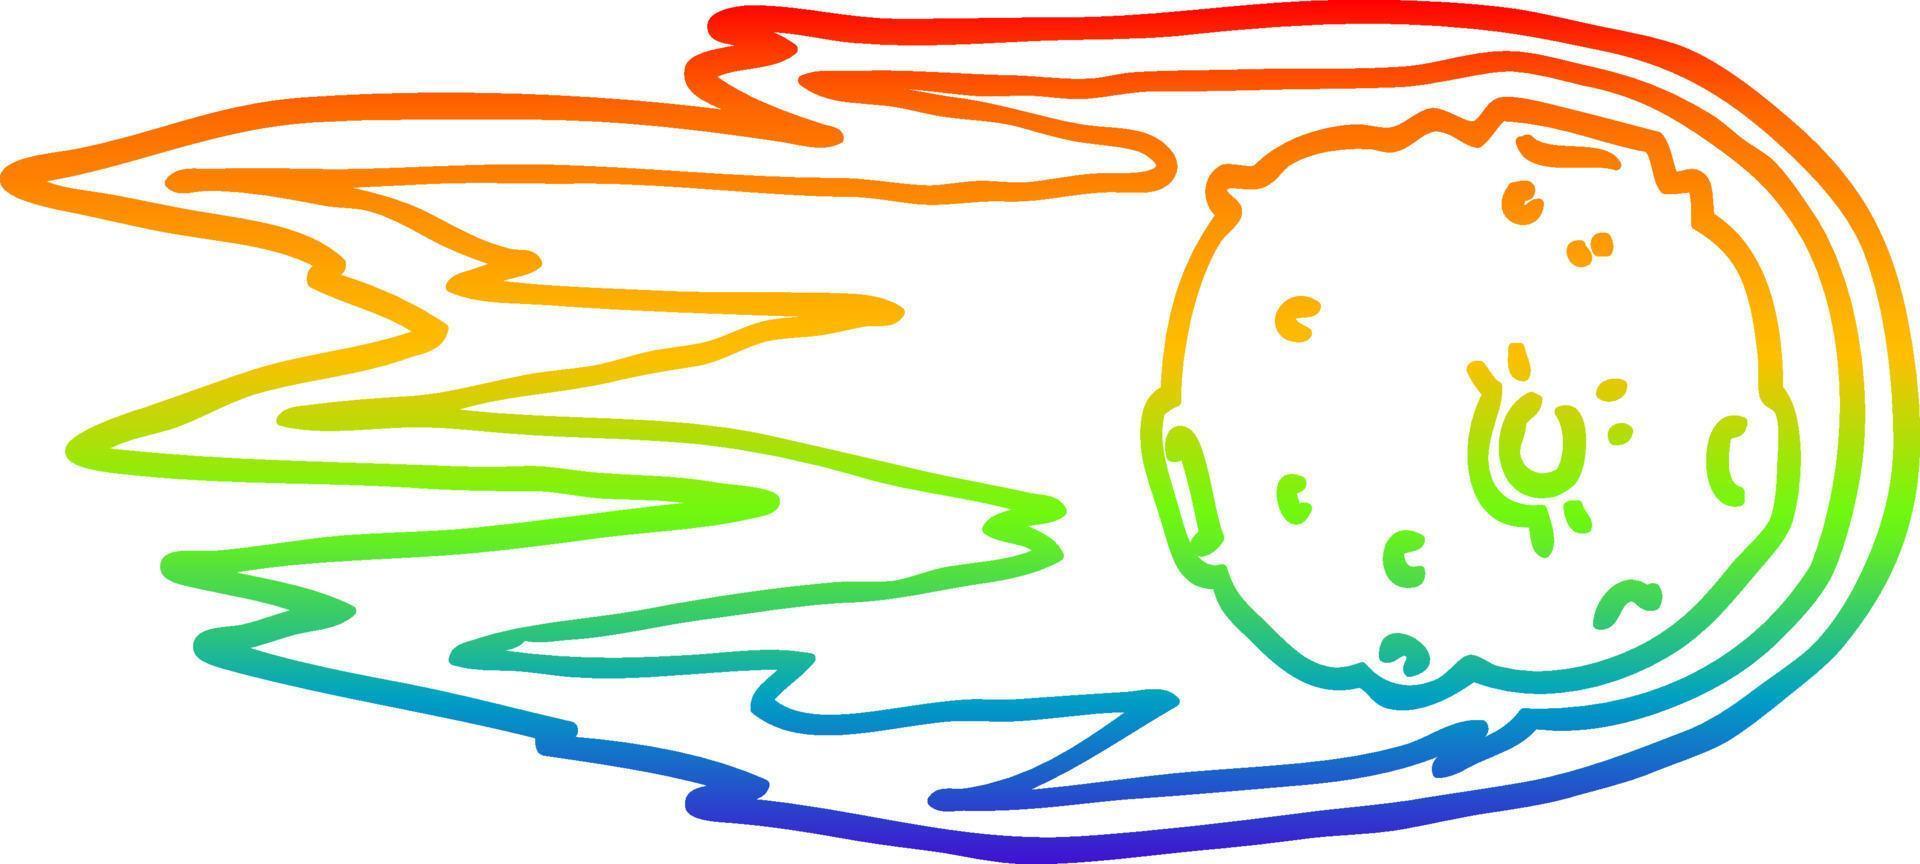 cometa de desenho de linha de gradiente de arco-íris vetor